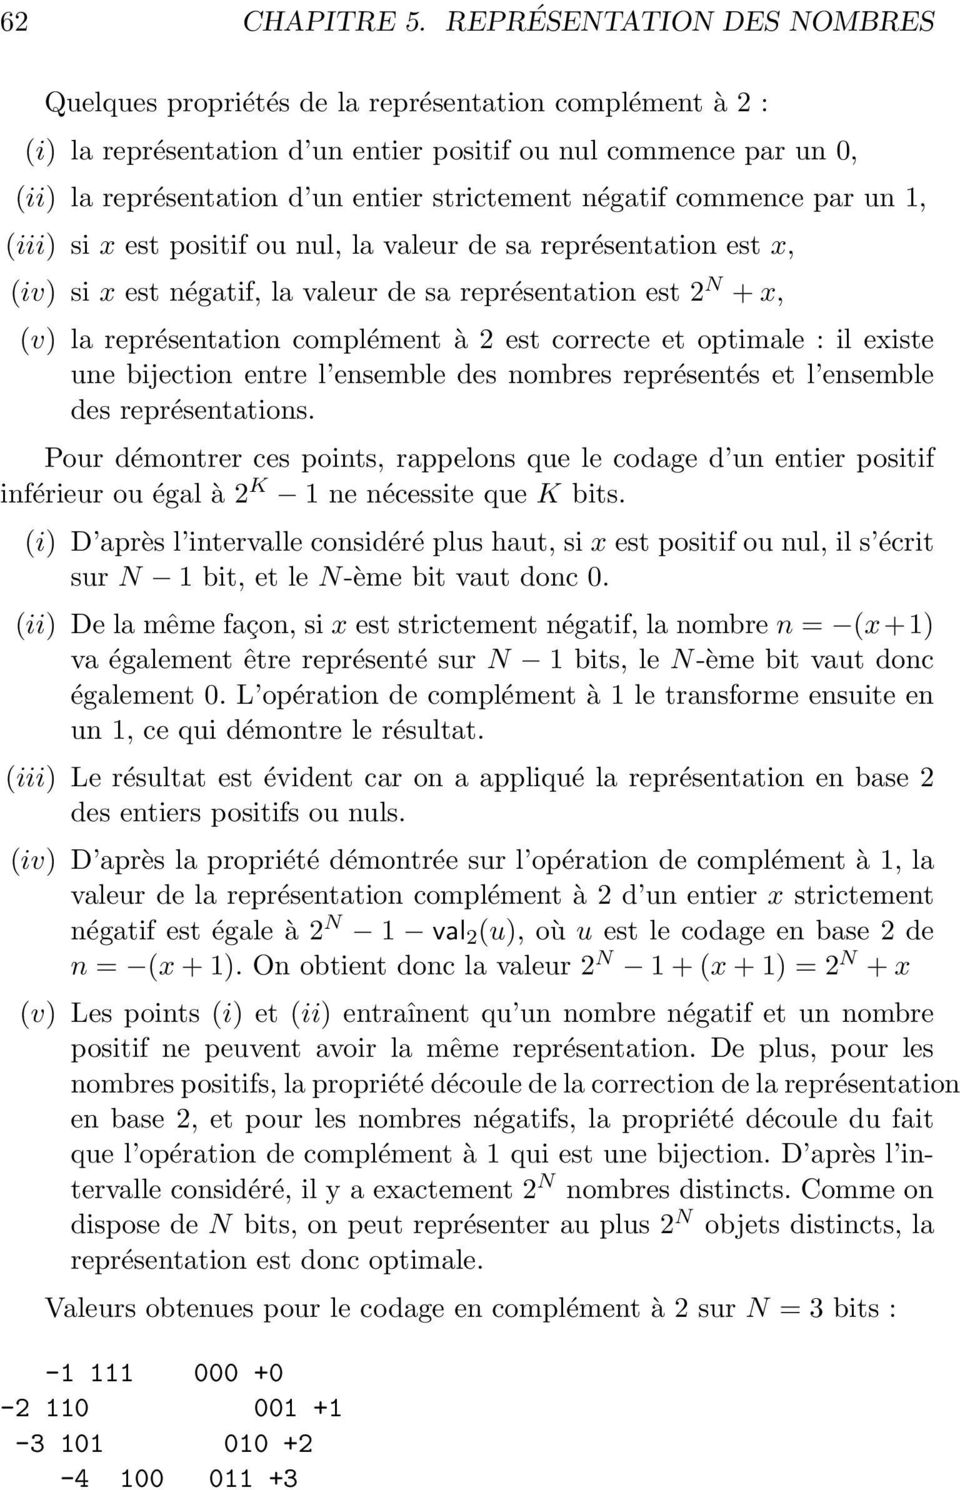 négatif commence par un, (iii) si x est positif ou nul, la valeur de sa représentation est x, (iv) si x est négatif, la valeur de sa représentation est 2 N + x, (v) la représentation complément à 2